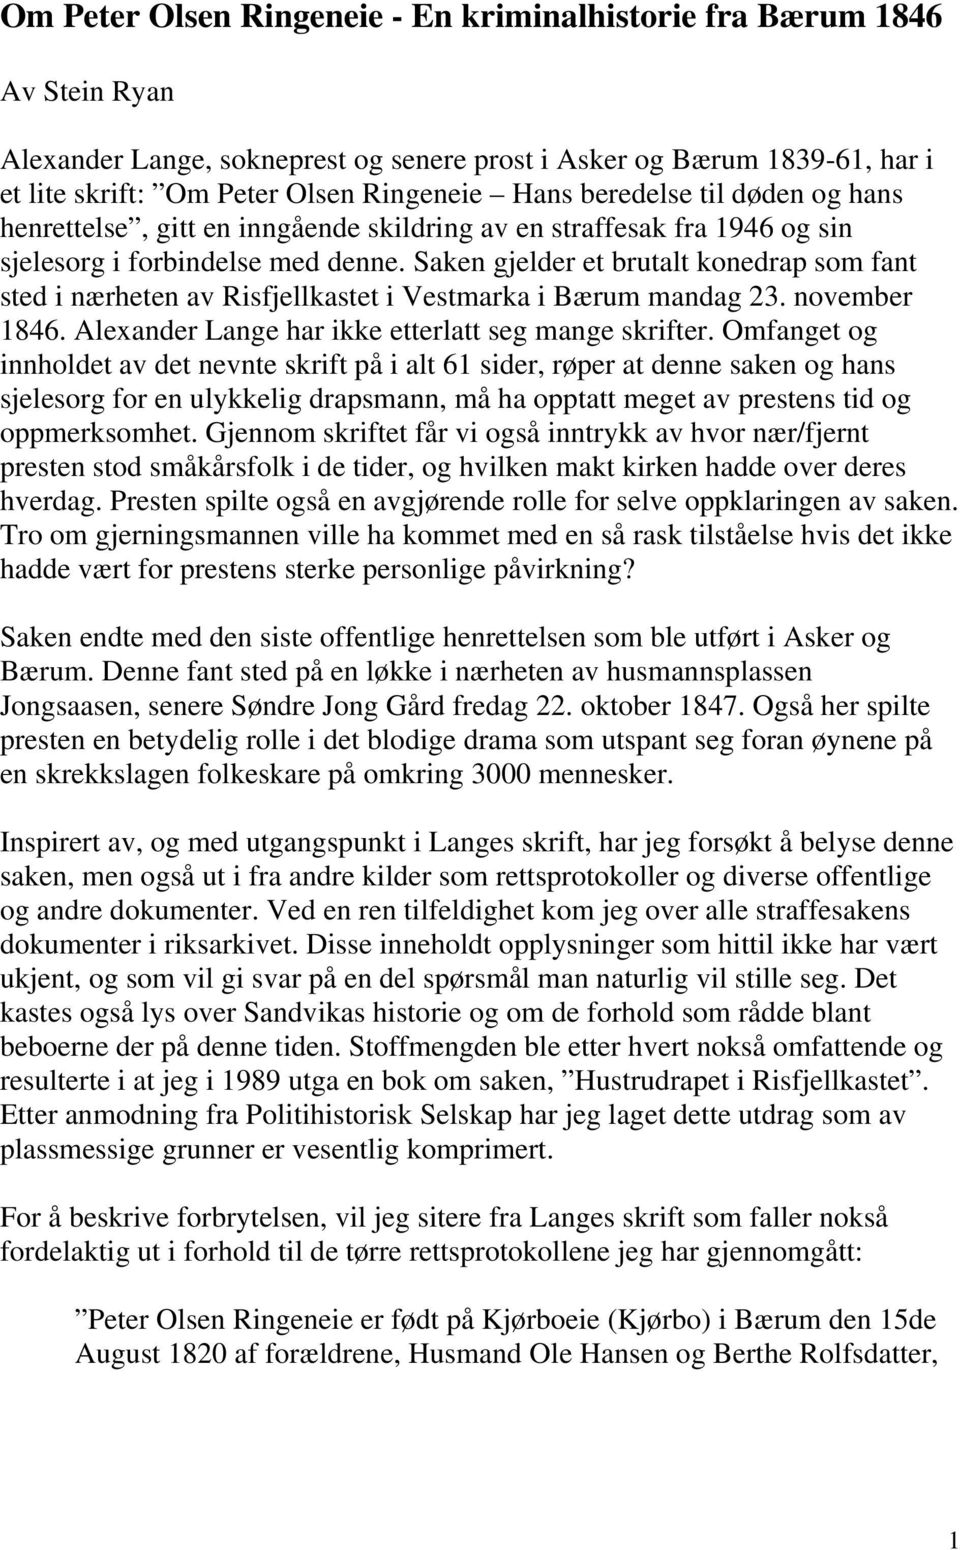 Saken gjelder et brutalt konedrap som fant sted i nærheten av Risfjellkastet i Vestmarka i Bærum mandag 23. november 1846. Alexander Lange har ikke etterlatt seg mange skrifter.